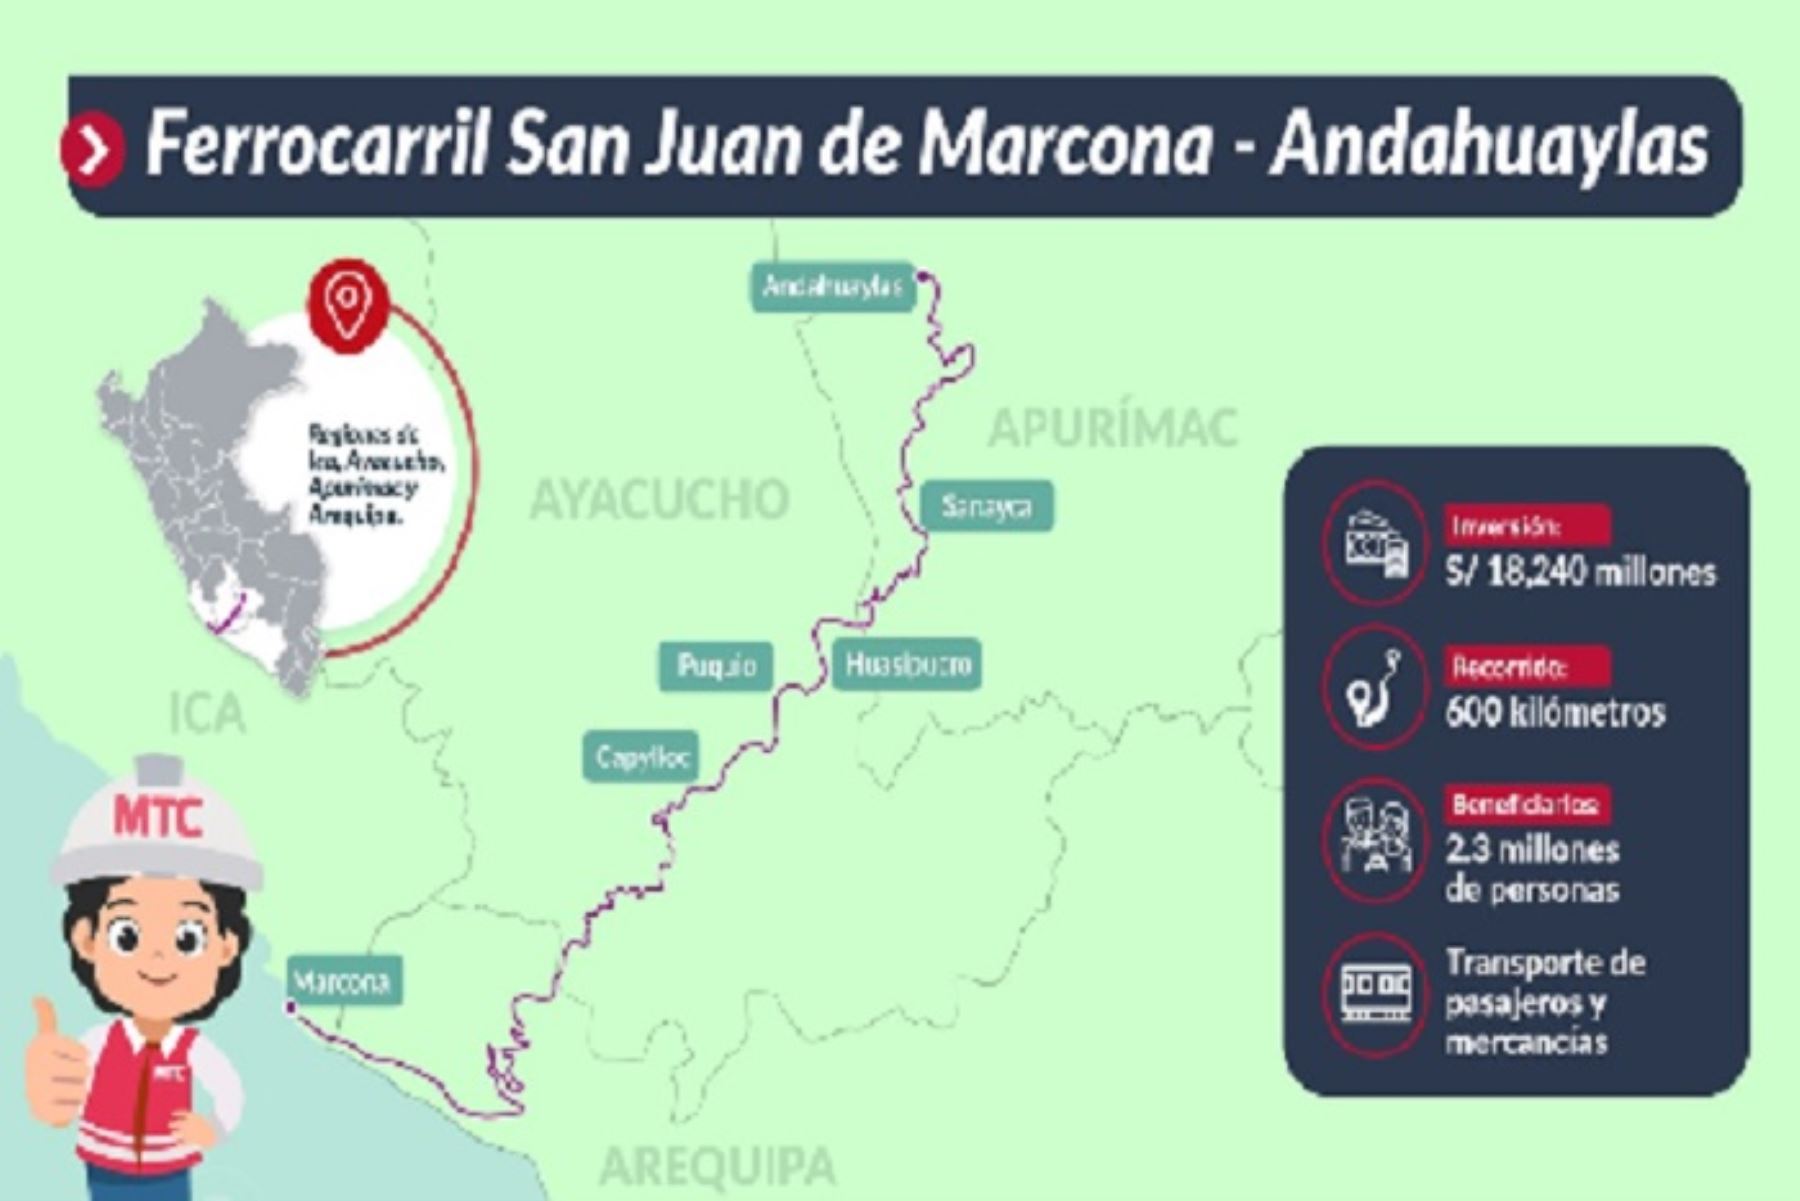 El proyecto del ferrocarril ferrocarril San Juan de Marcona–Andahuaylas, incluye tendido de fibra óptica y subestaciones eléctricas en su recorrido, además de un hospital rodante.